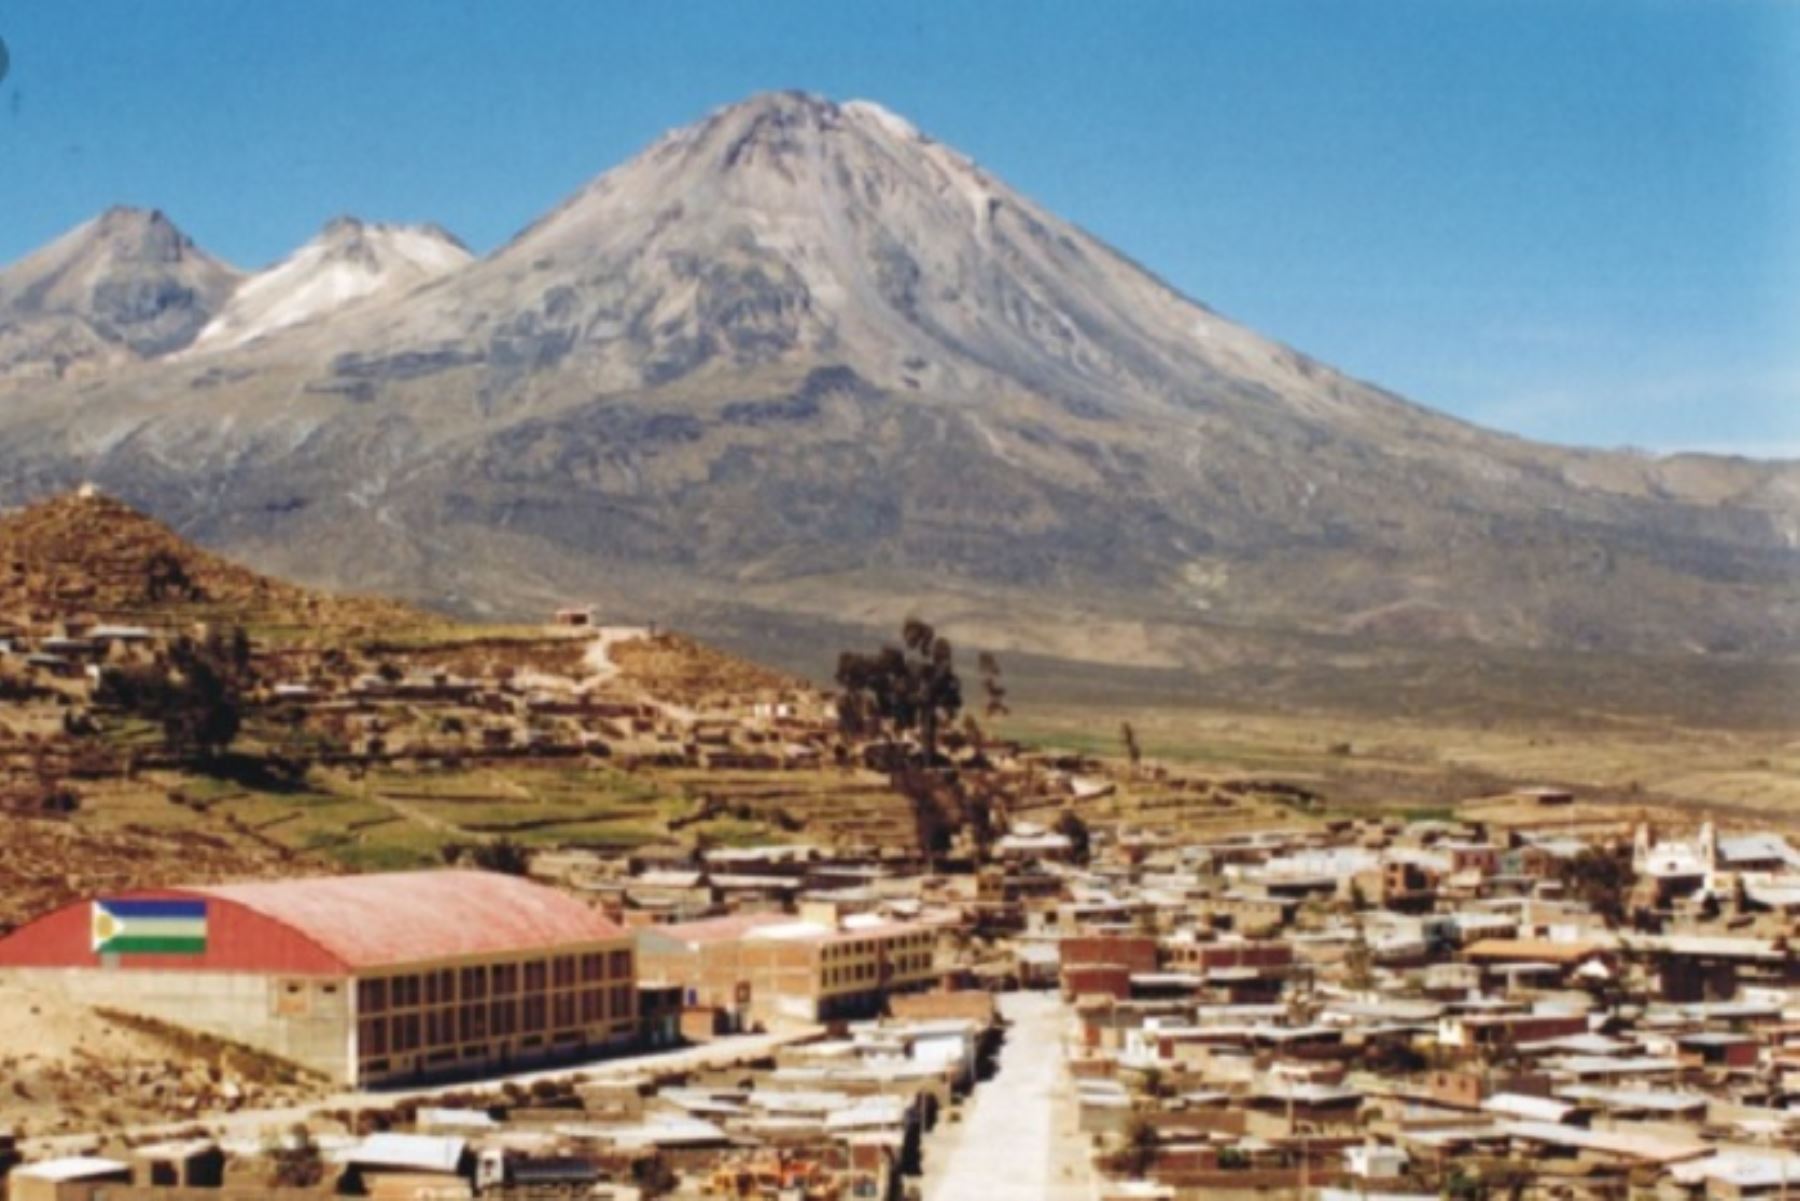 Ante una posible reactivación de los volcanes Tutupaca y Yucamane, ubicados en el departamento de Tacna, más de 13 mil personas que viven en zonas aledañas estarían en peligro, informó el Instituto Geológico, Minero y Metalúrgico (Ingemmet), a través de su Observatorio Vulcanológico.